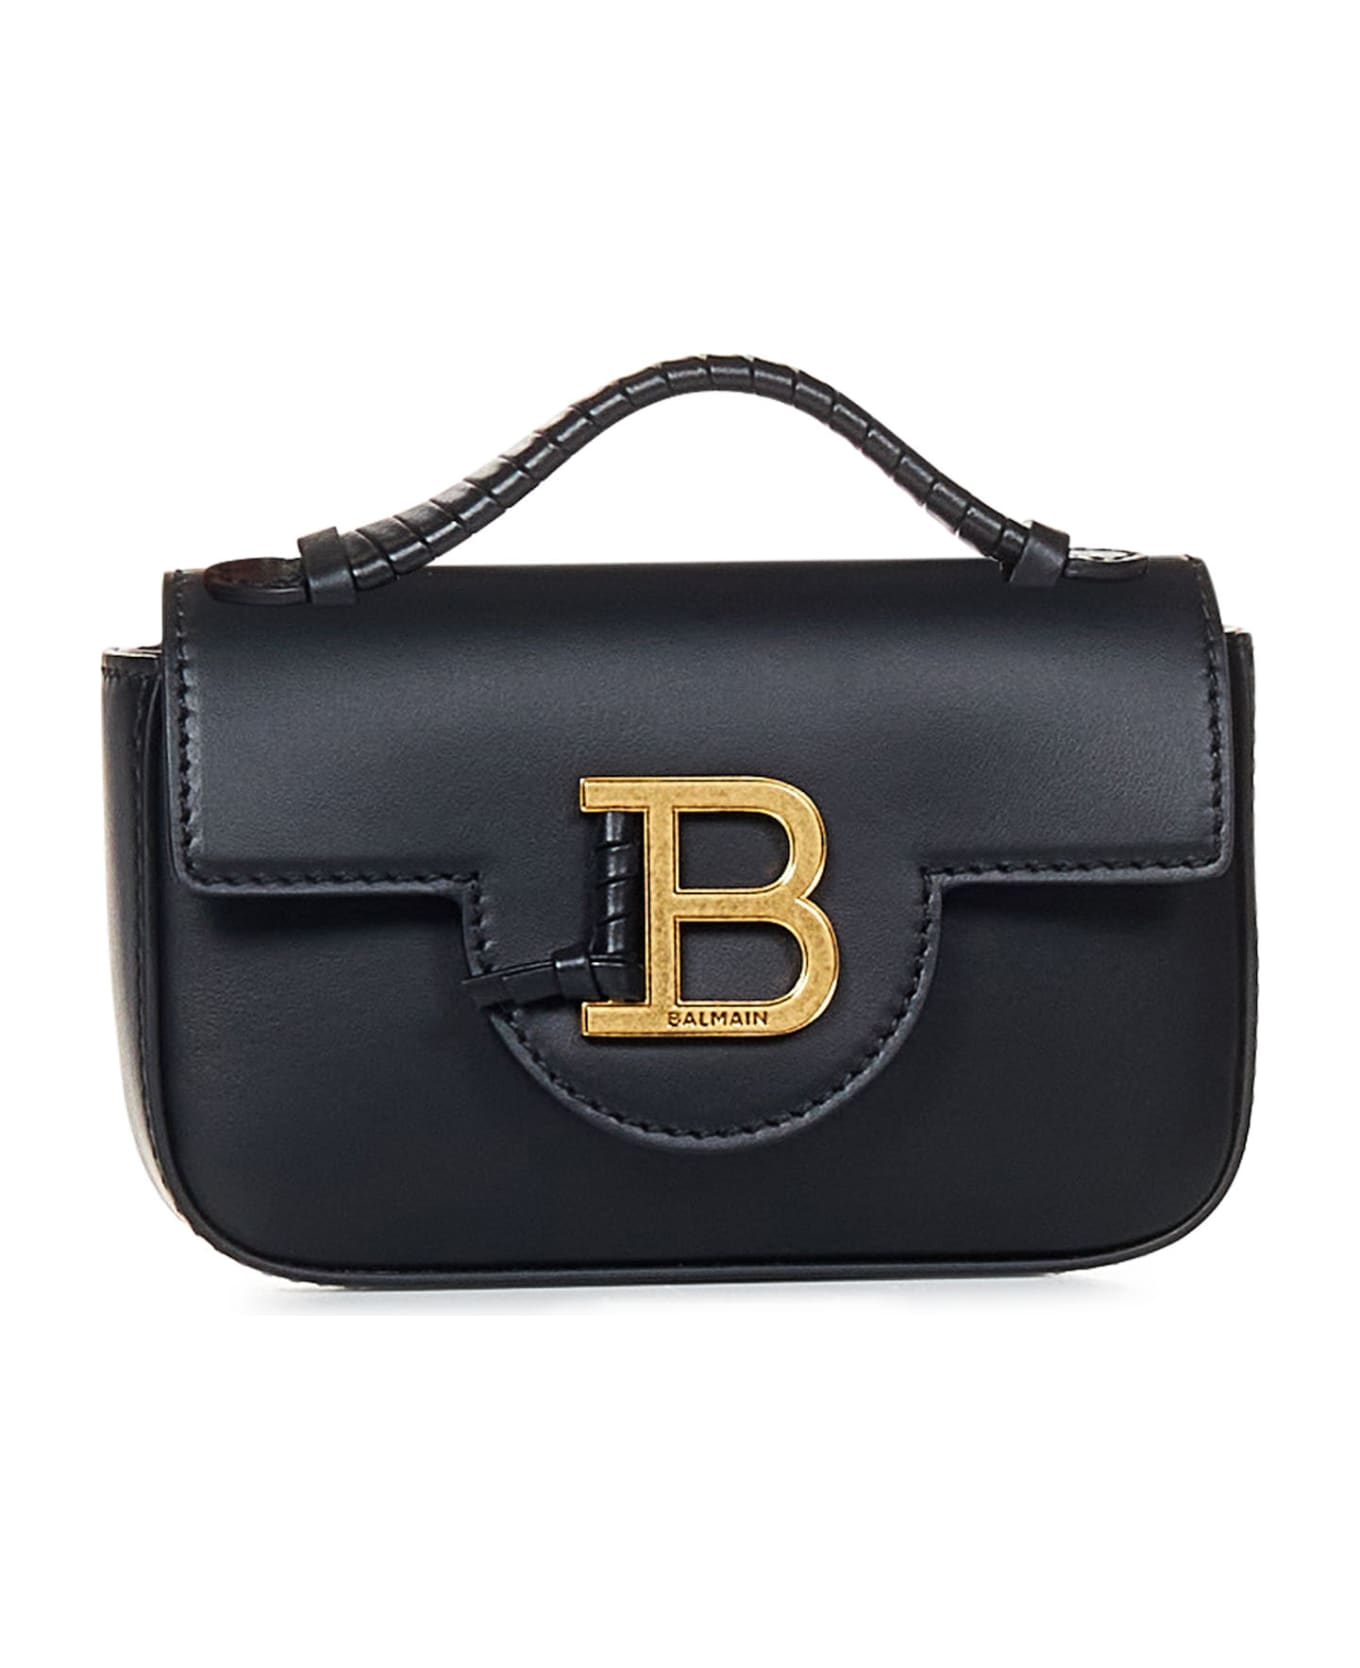 Balmain Paris B-buzz Mini Handbag - Black